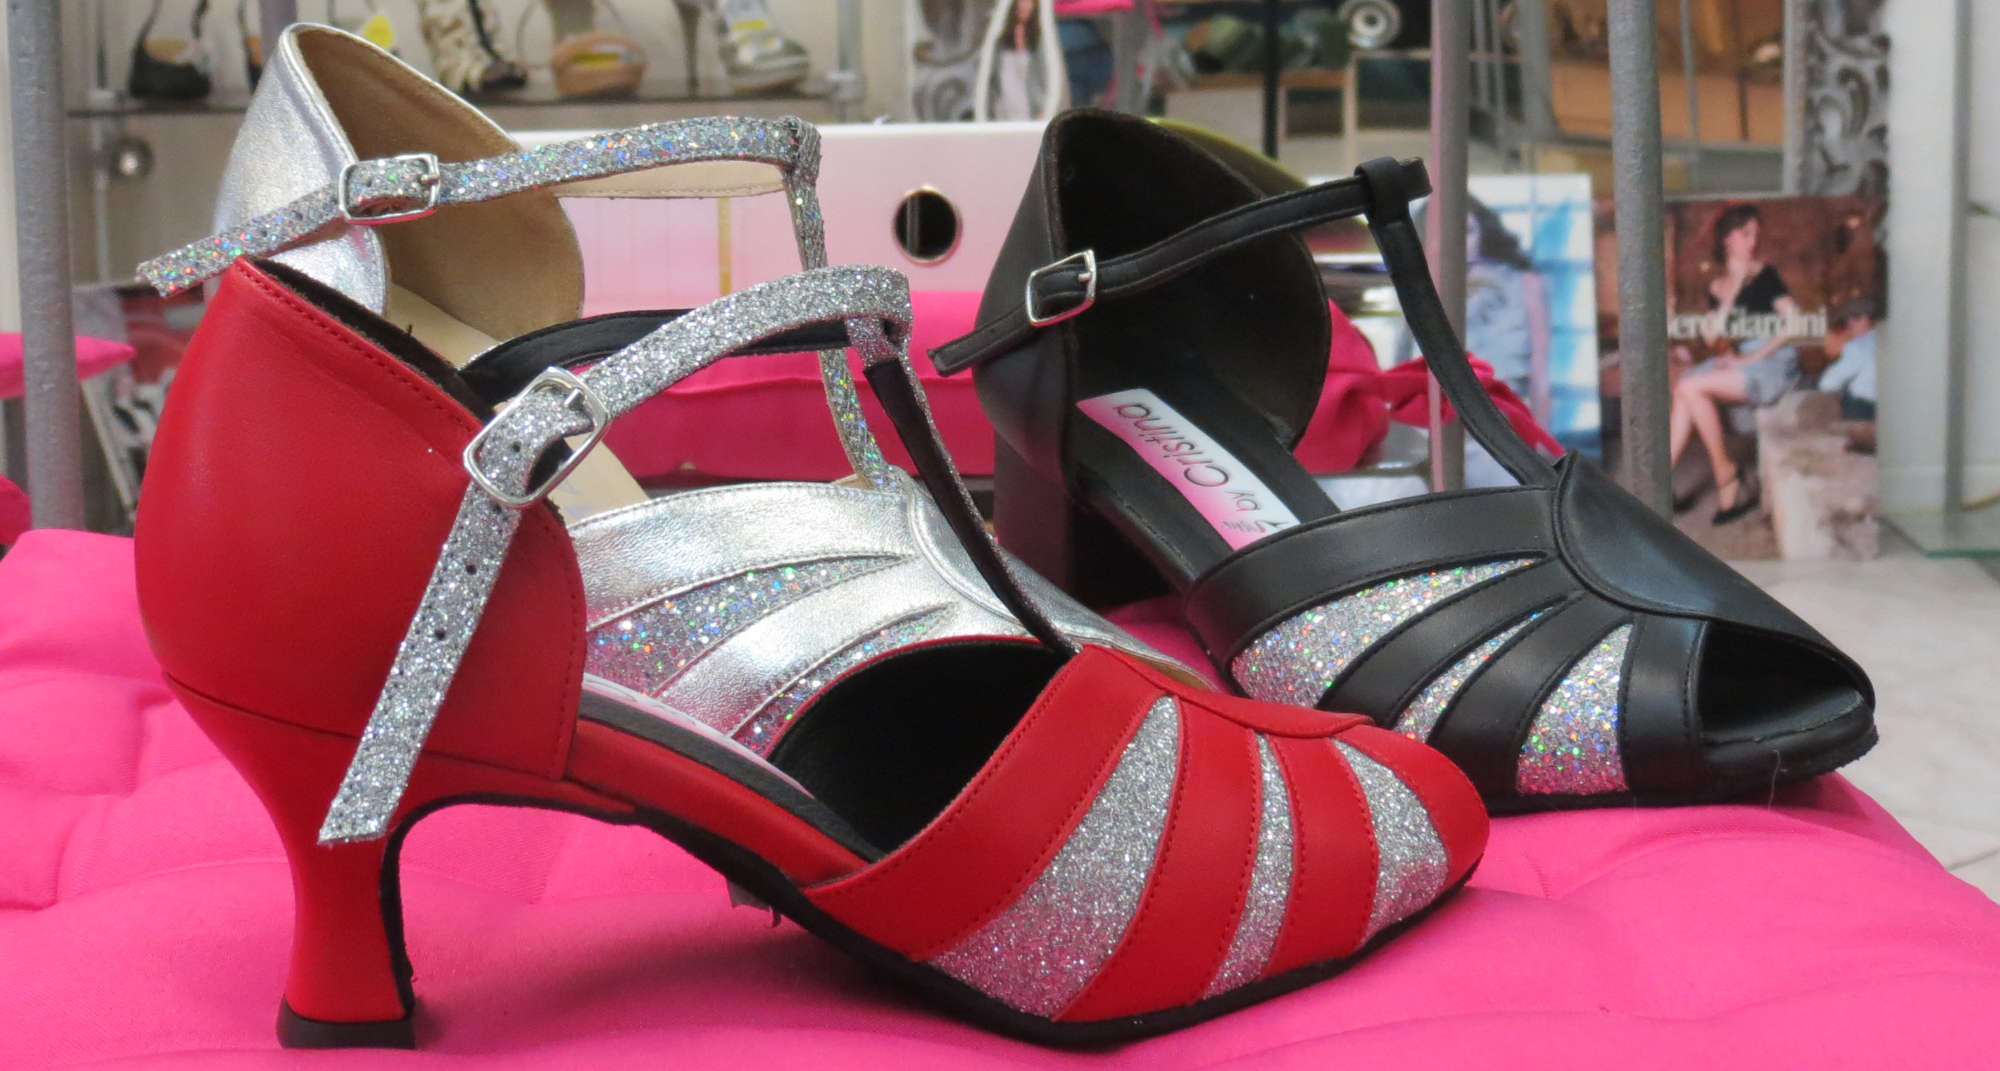 Jannic Chaussures by Cristina Boutique de chaussures Pézenas